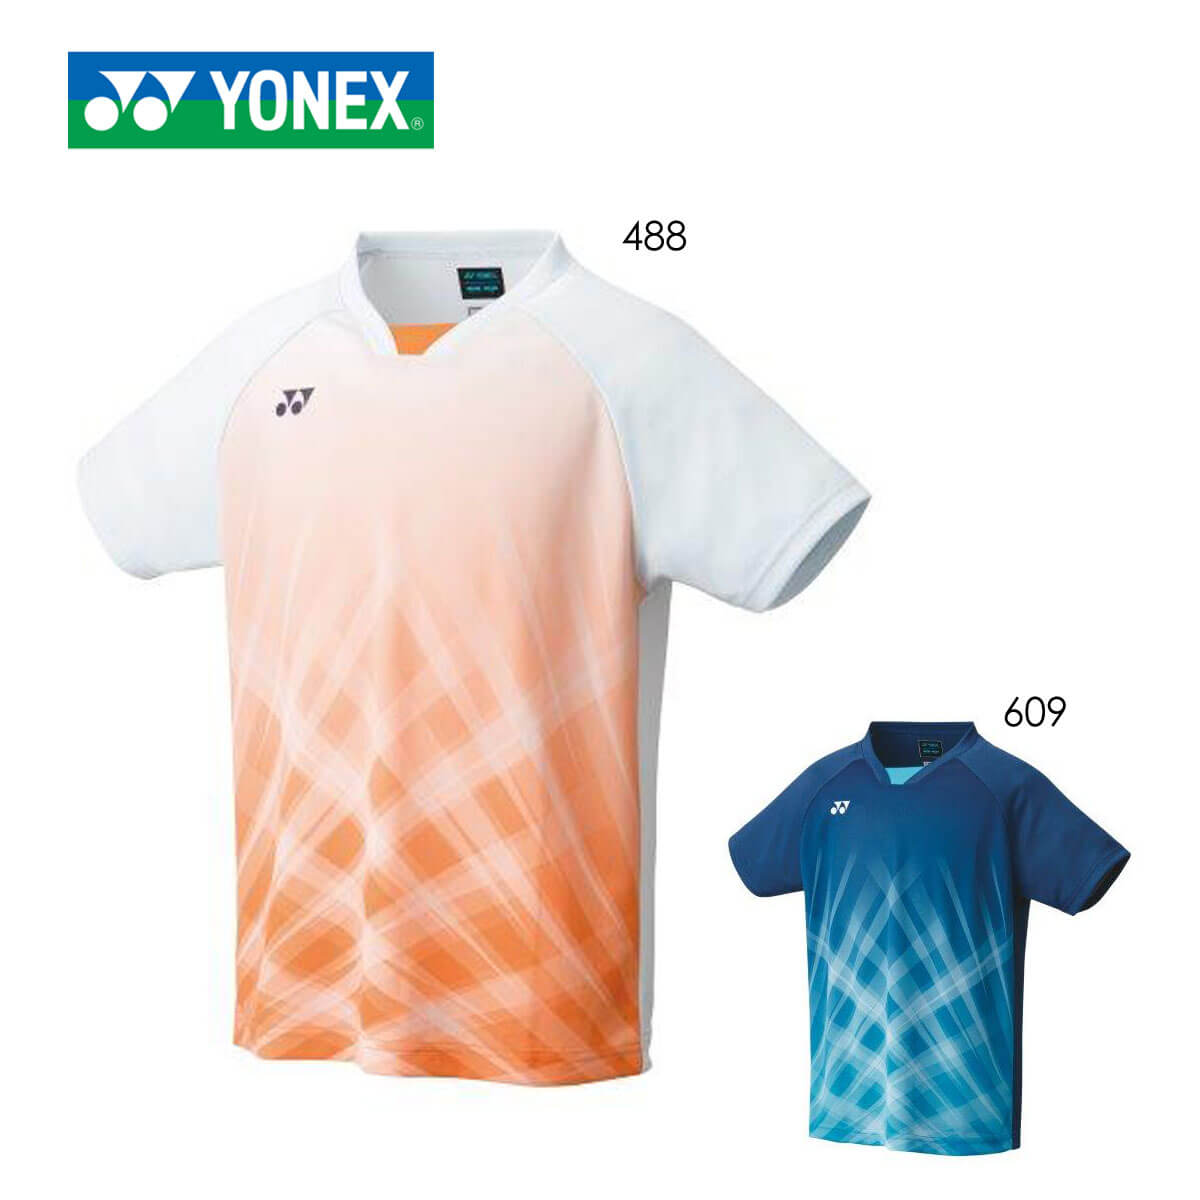 YONEX 10419J ジュニアゲームシャツ テニス・バドミントンウェア(ジュニア) 2021SS ヨネックス YONEX 10419J ゲームシャツ ウェア(ジュニア) テニス・バドミントン 2021FW ヨネックス【メール便可/取り寄せ】